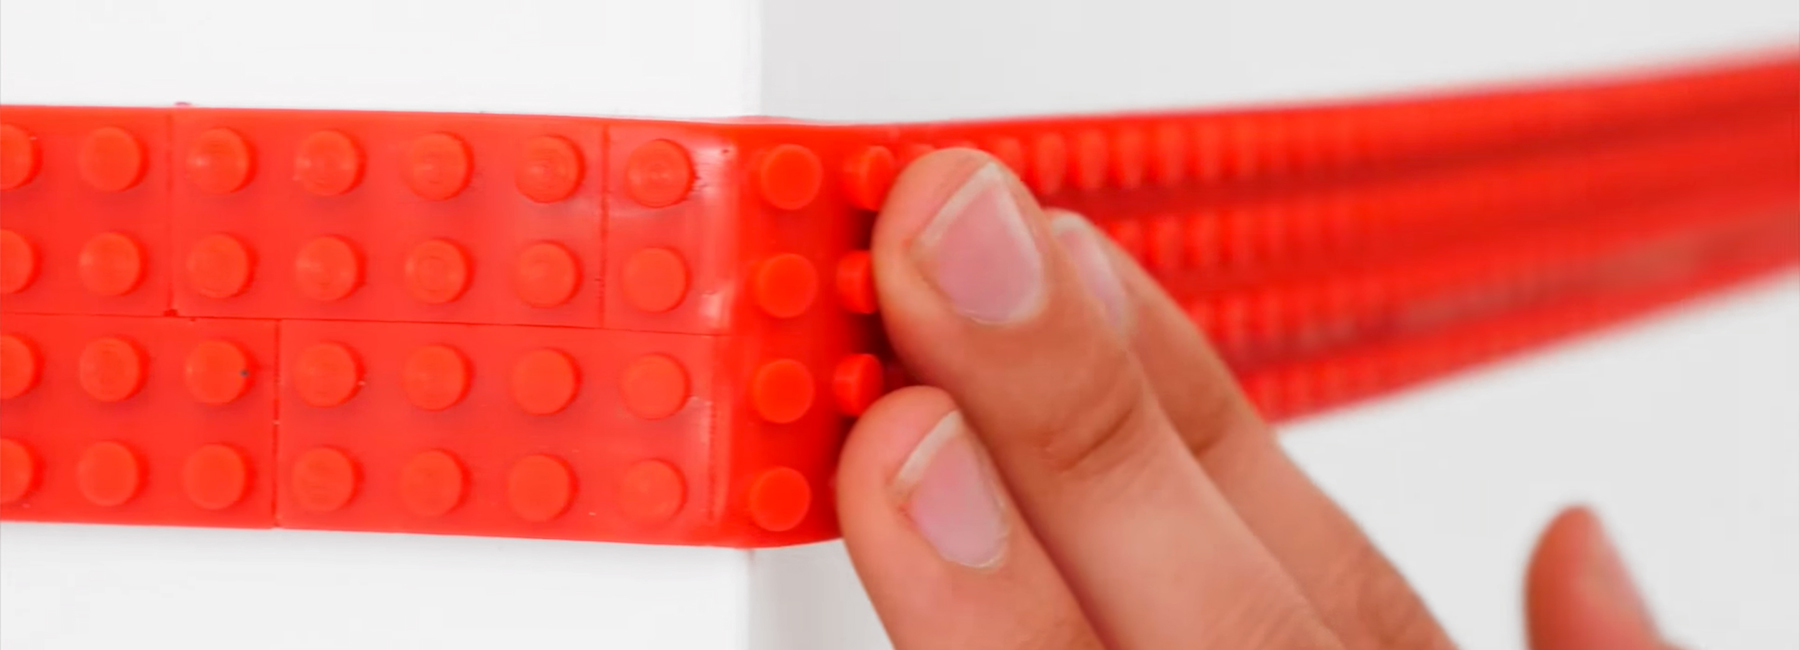 LEGO-tape-nimuno-designboom-1800